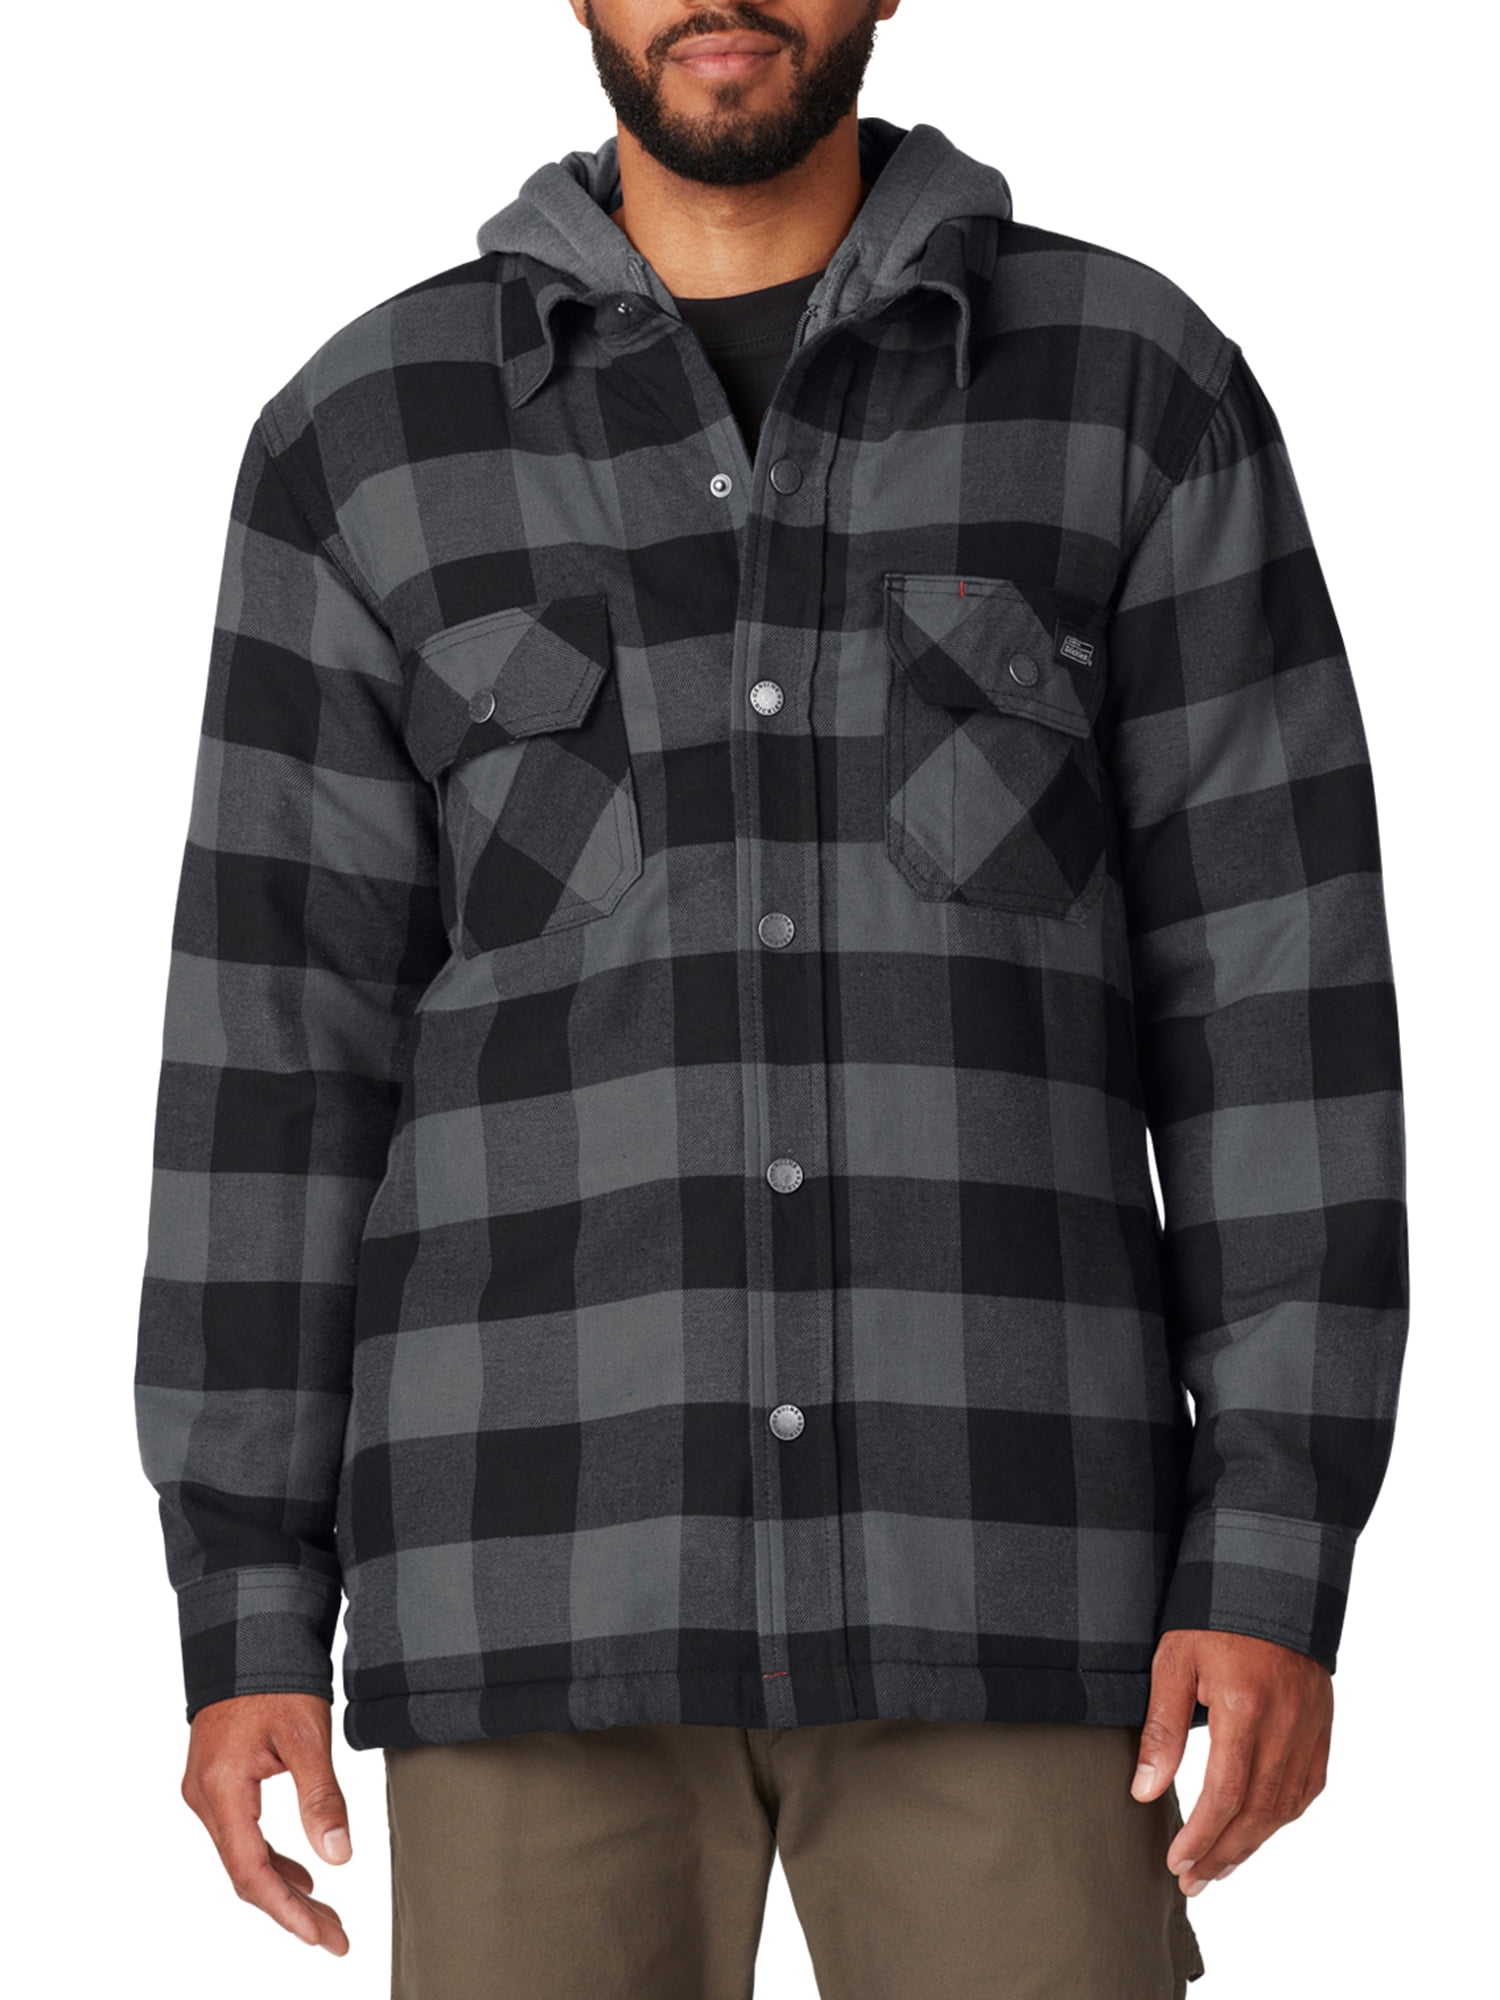 Genuine Dickies Men's Sherpa Lined Hooded Shirt Jacket - Walmart.com